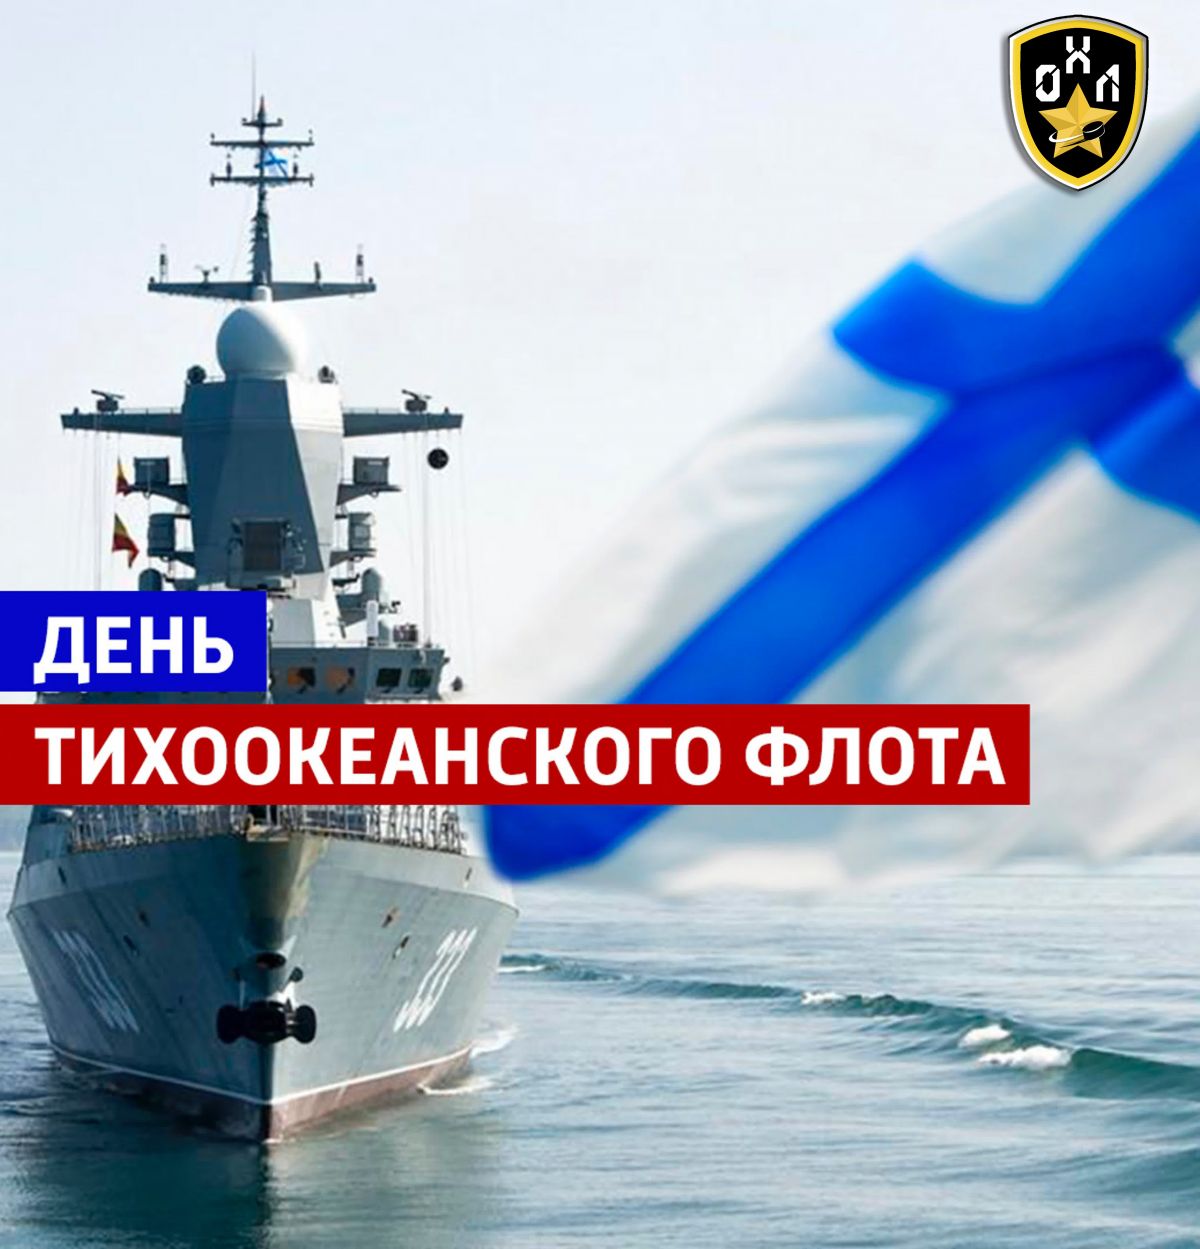 С ДНЕМ ТИХООКЕАНСКОГО ФЛОТА ВМФ РОССИИ!